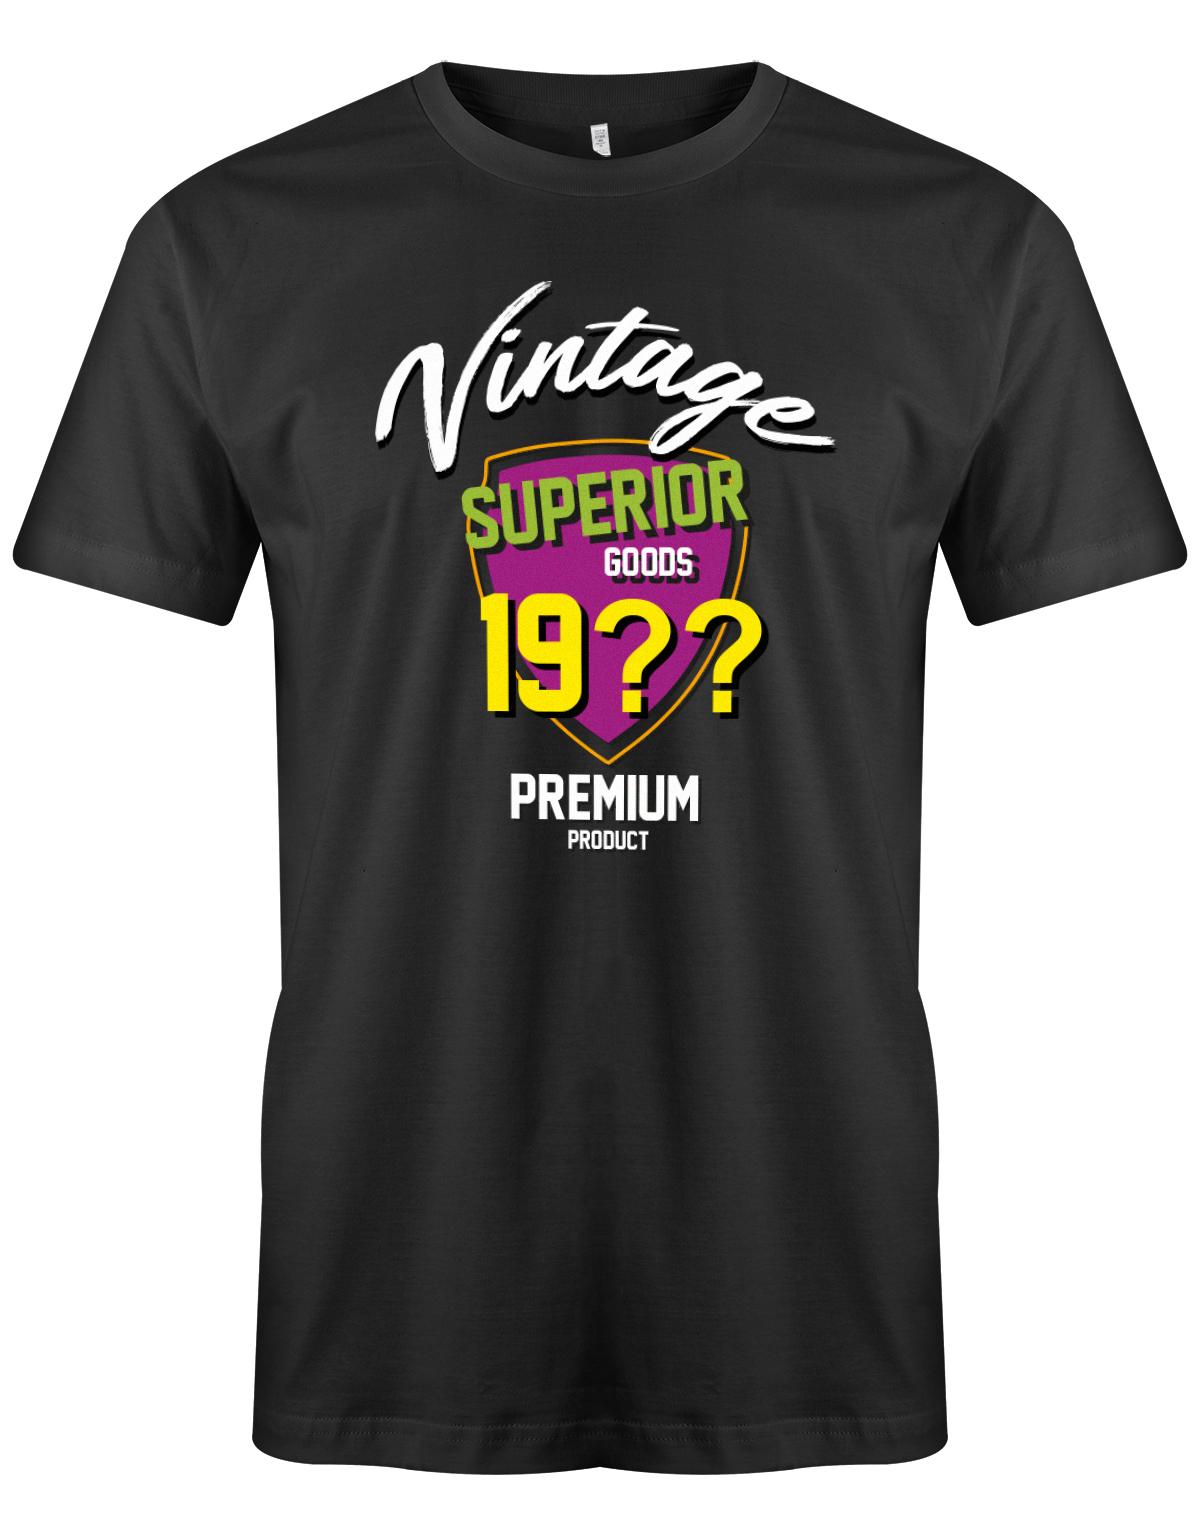 Geburtstag Tshirt für Männer Vintage Superior goods Personalisiert mit Geburtsjahr Premium Product SChwarz